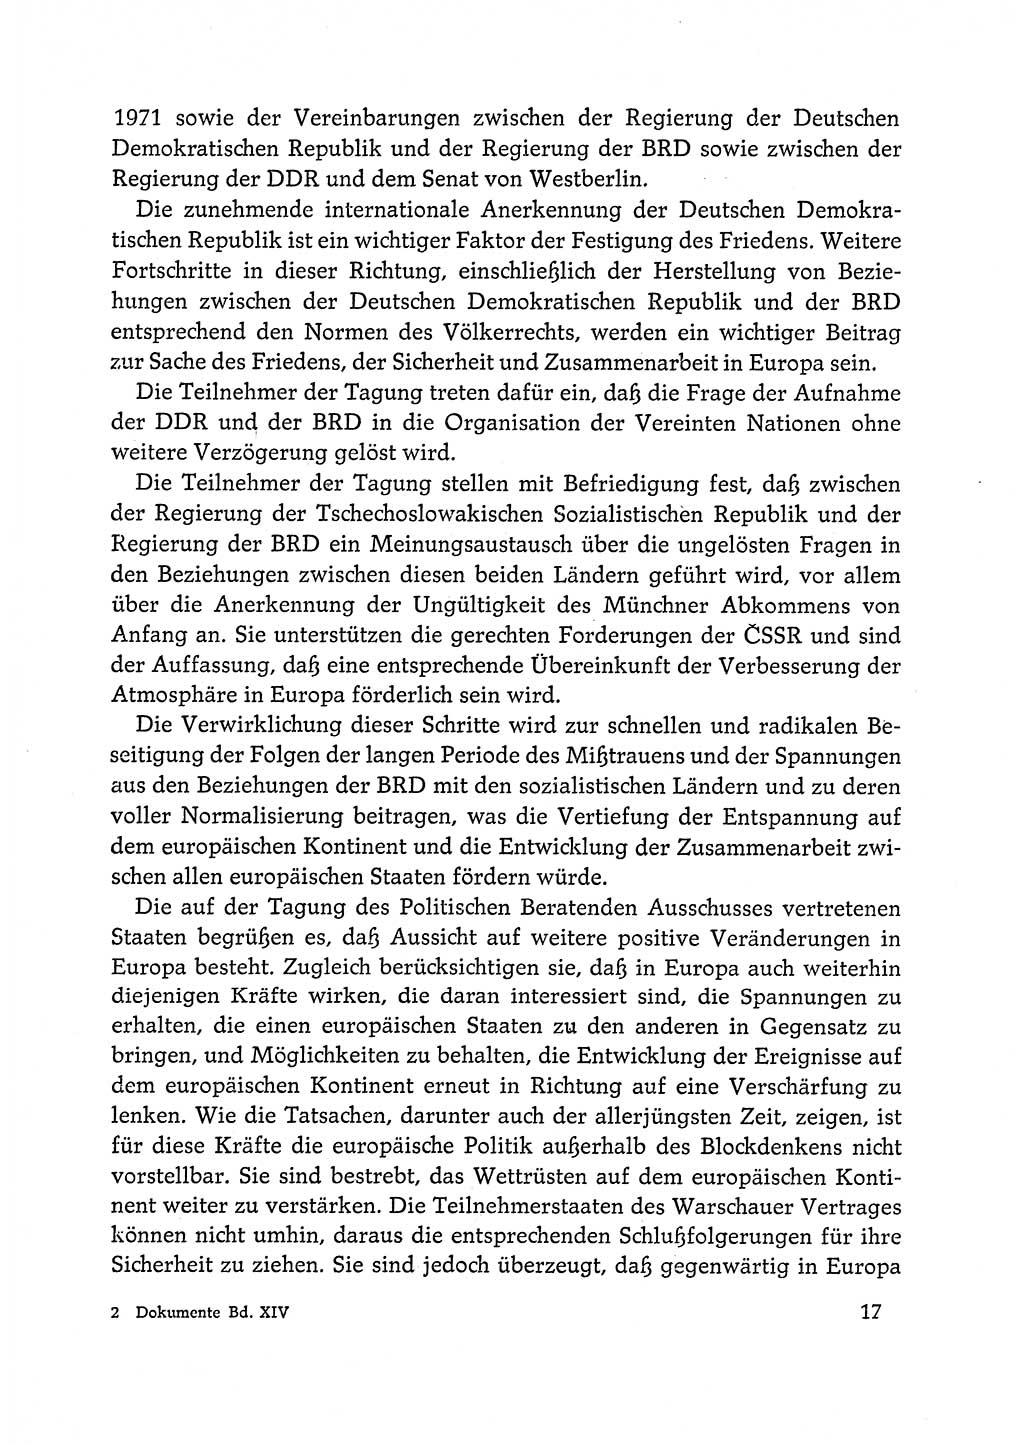 Dokumente der Sozialistischen Einheitspartei Deutschlands (SED) [Deutsche Demokratische Republik (DDR)] 1972-1973, Seite 17 (Dok. SED DDR 1972-1973, S. 17)